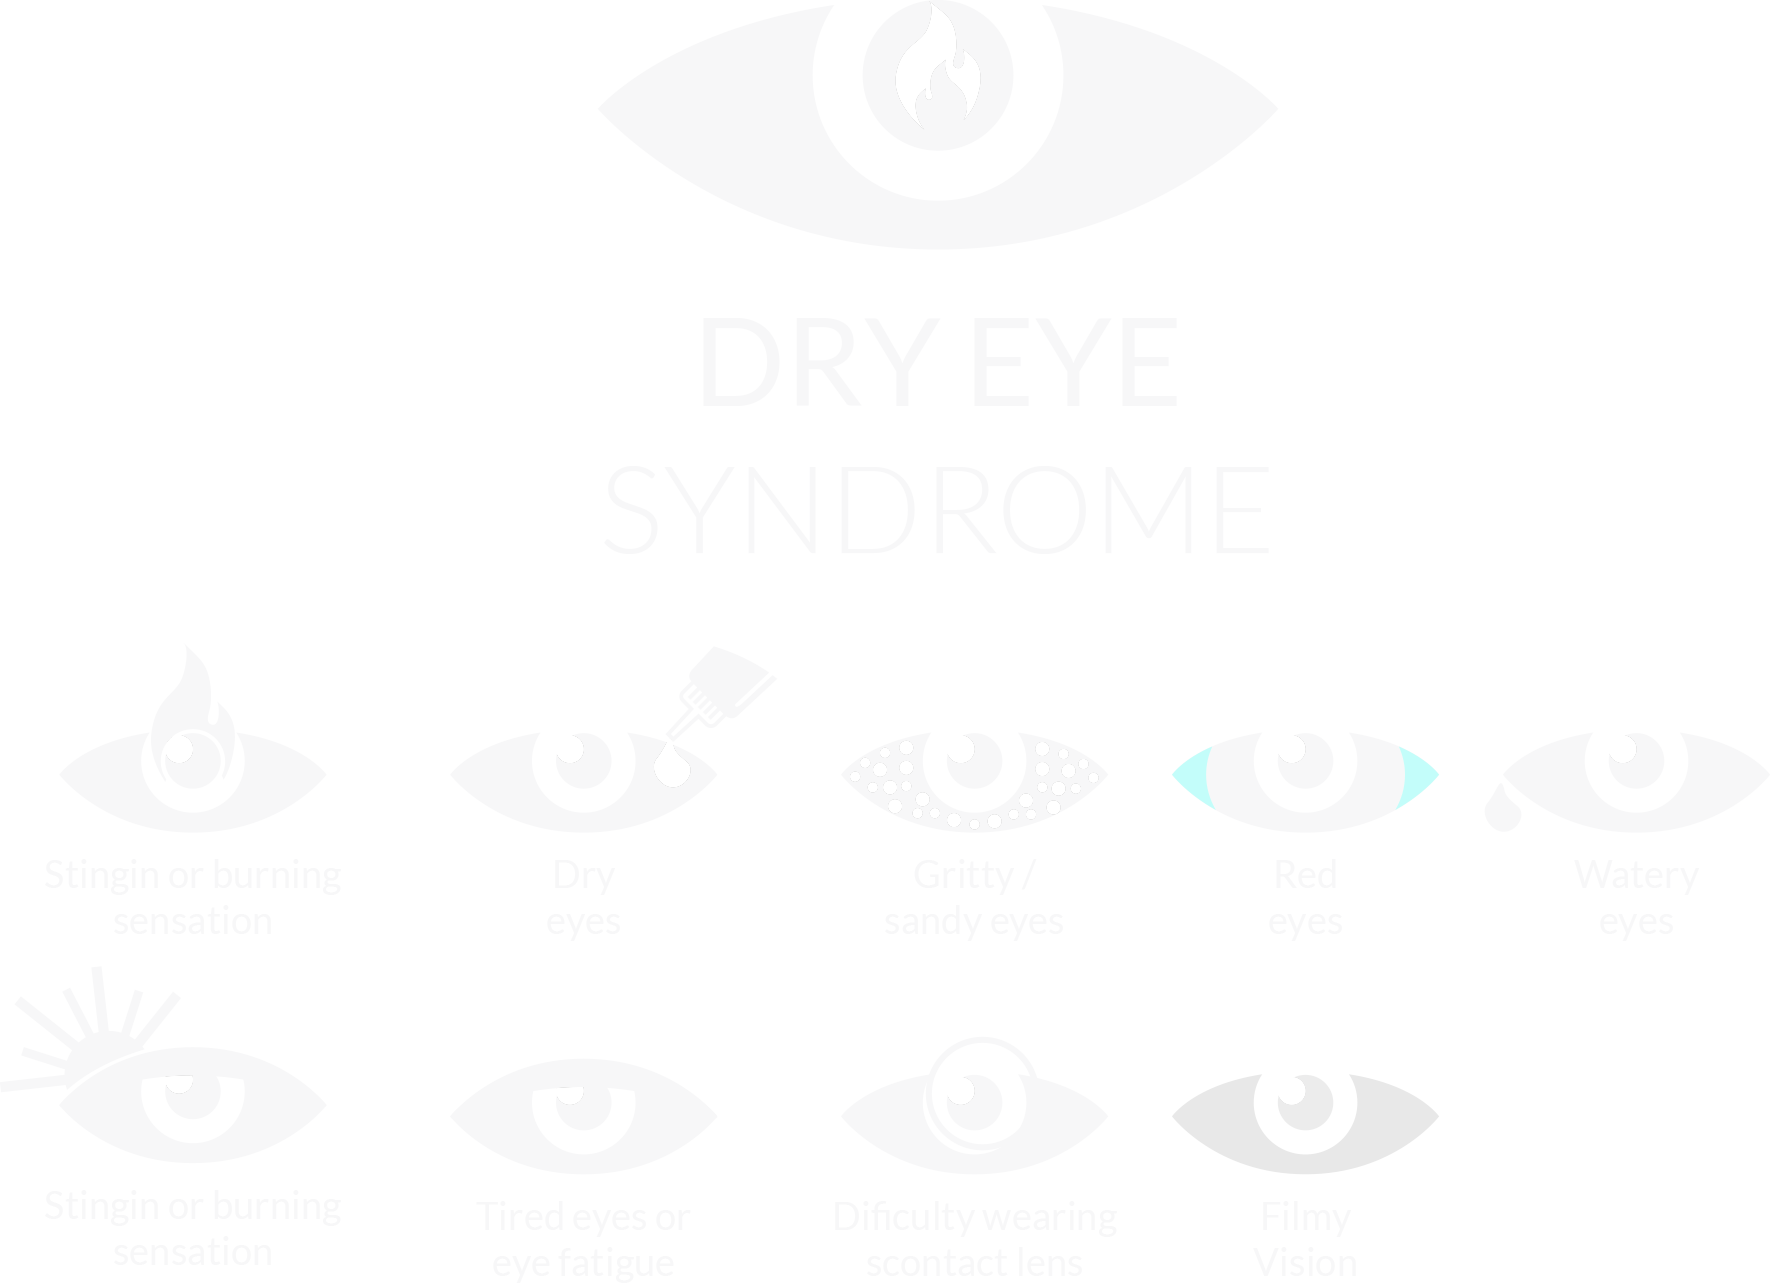 dry-eye-disease